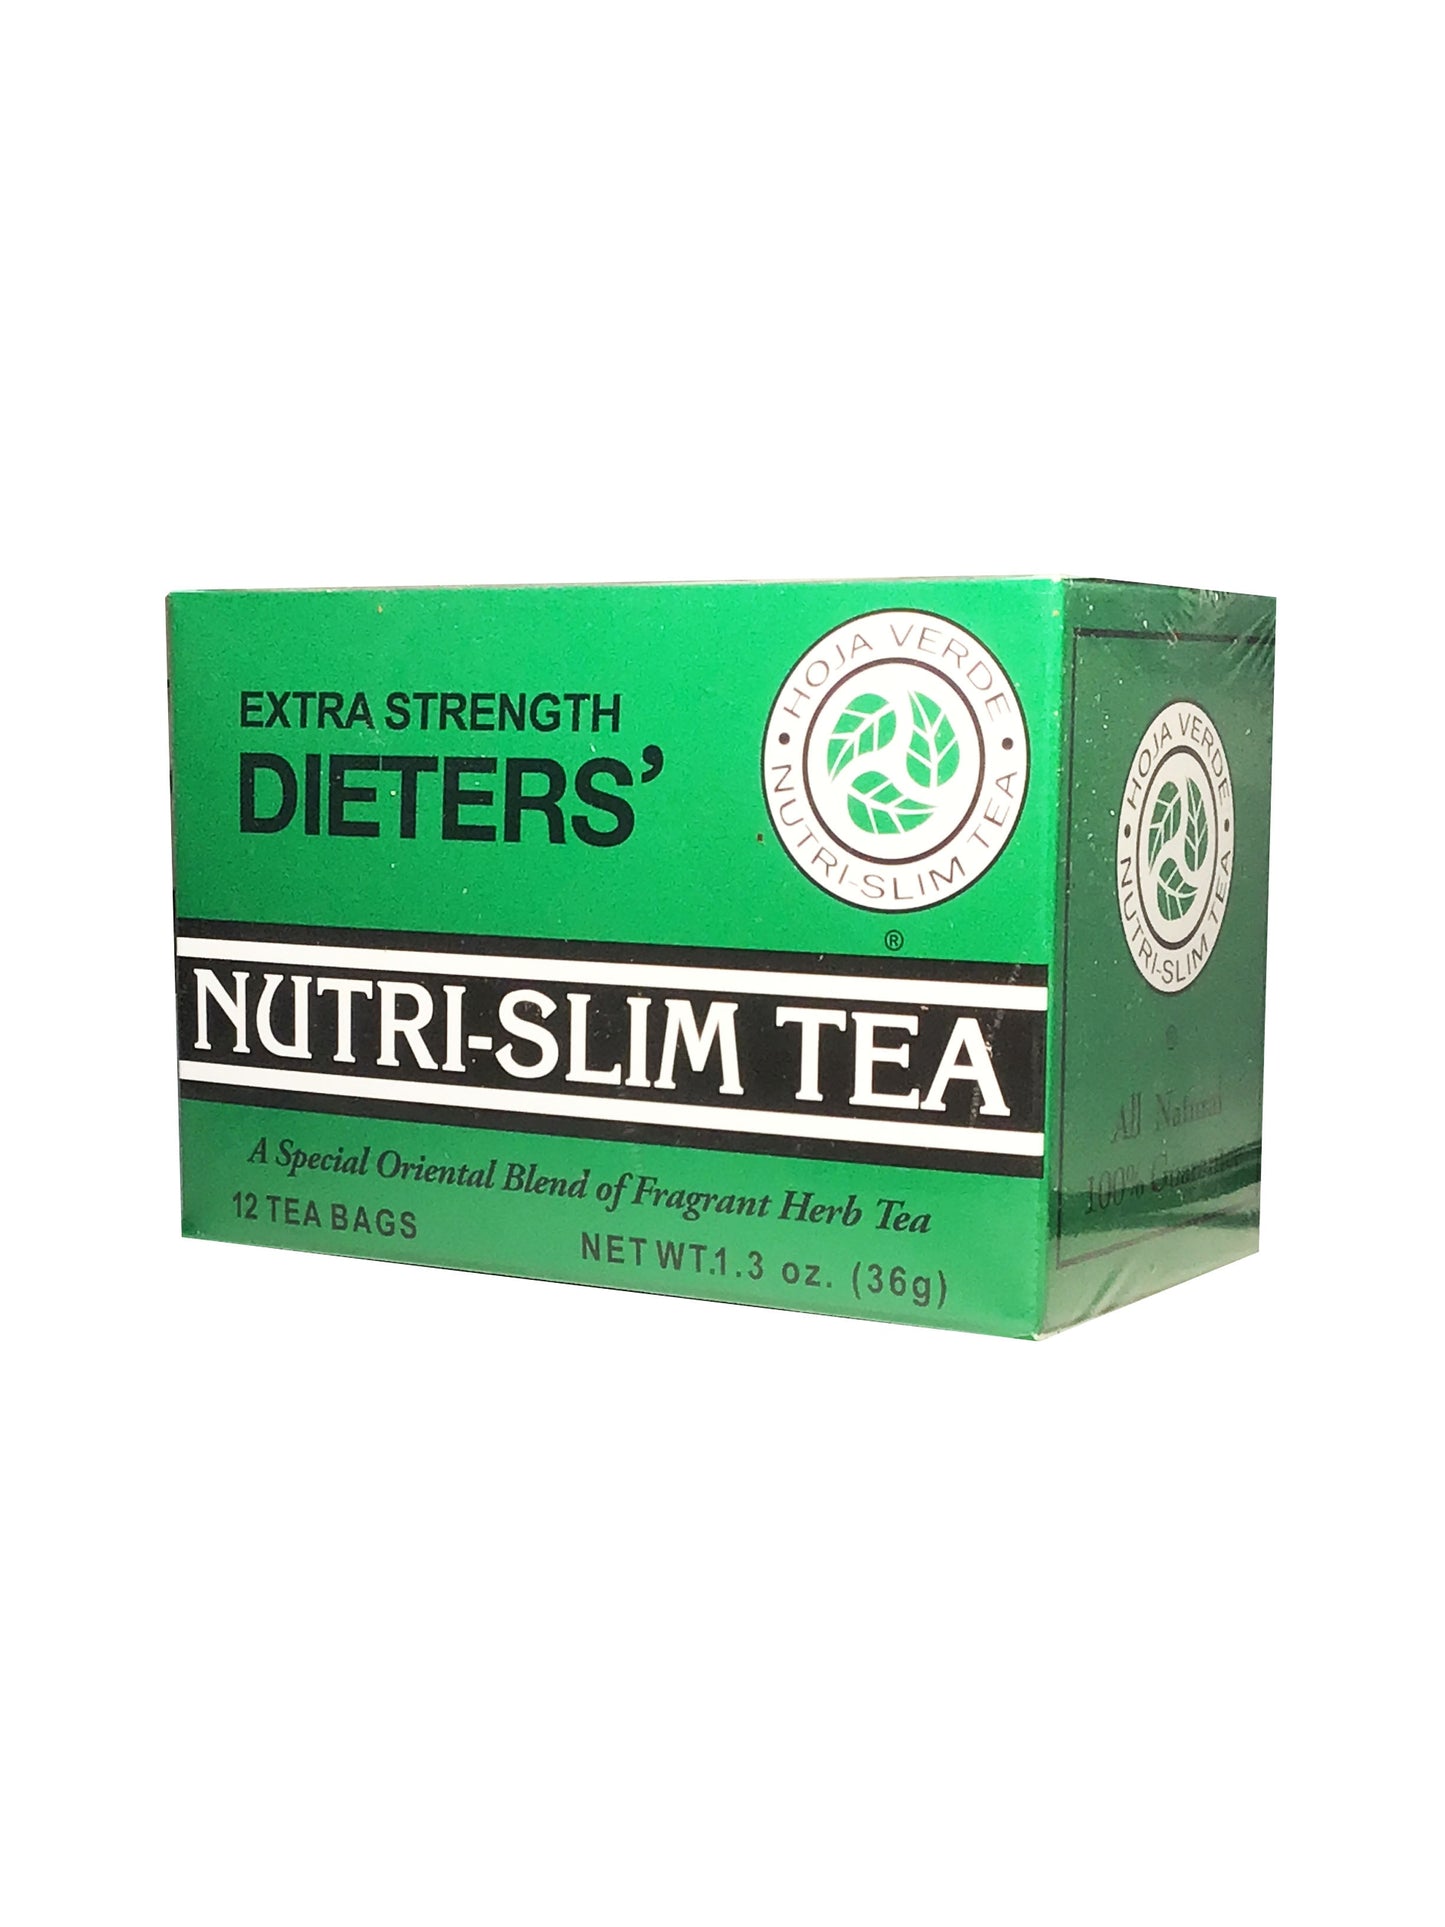 HOJA VERDE Extra Strength Dieters' Nutri-Slim Tea 100% Natural, 12 Tea Bags (36g) 减肥茶